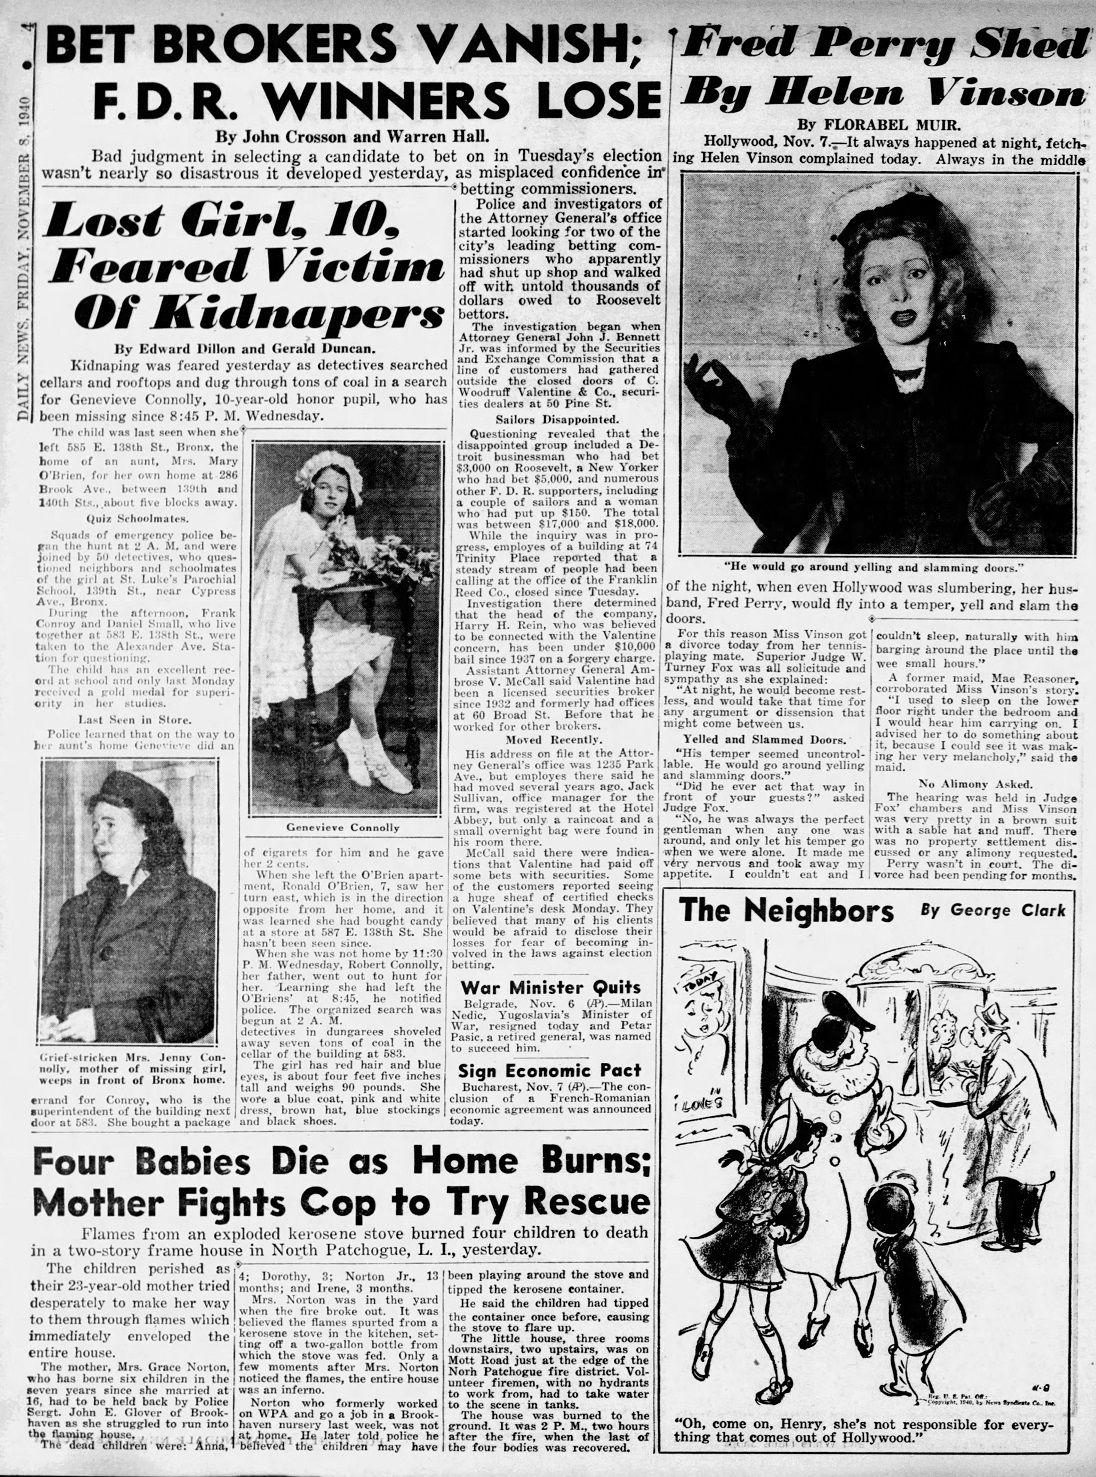 Daily_News_Fri__Nov_8__1940_.jpg